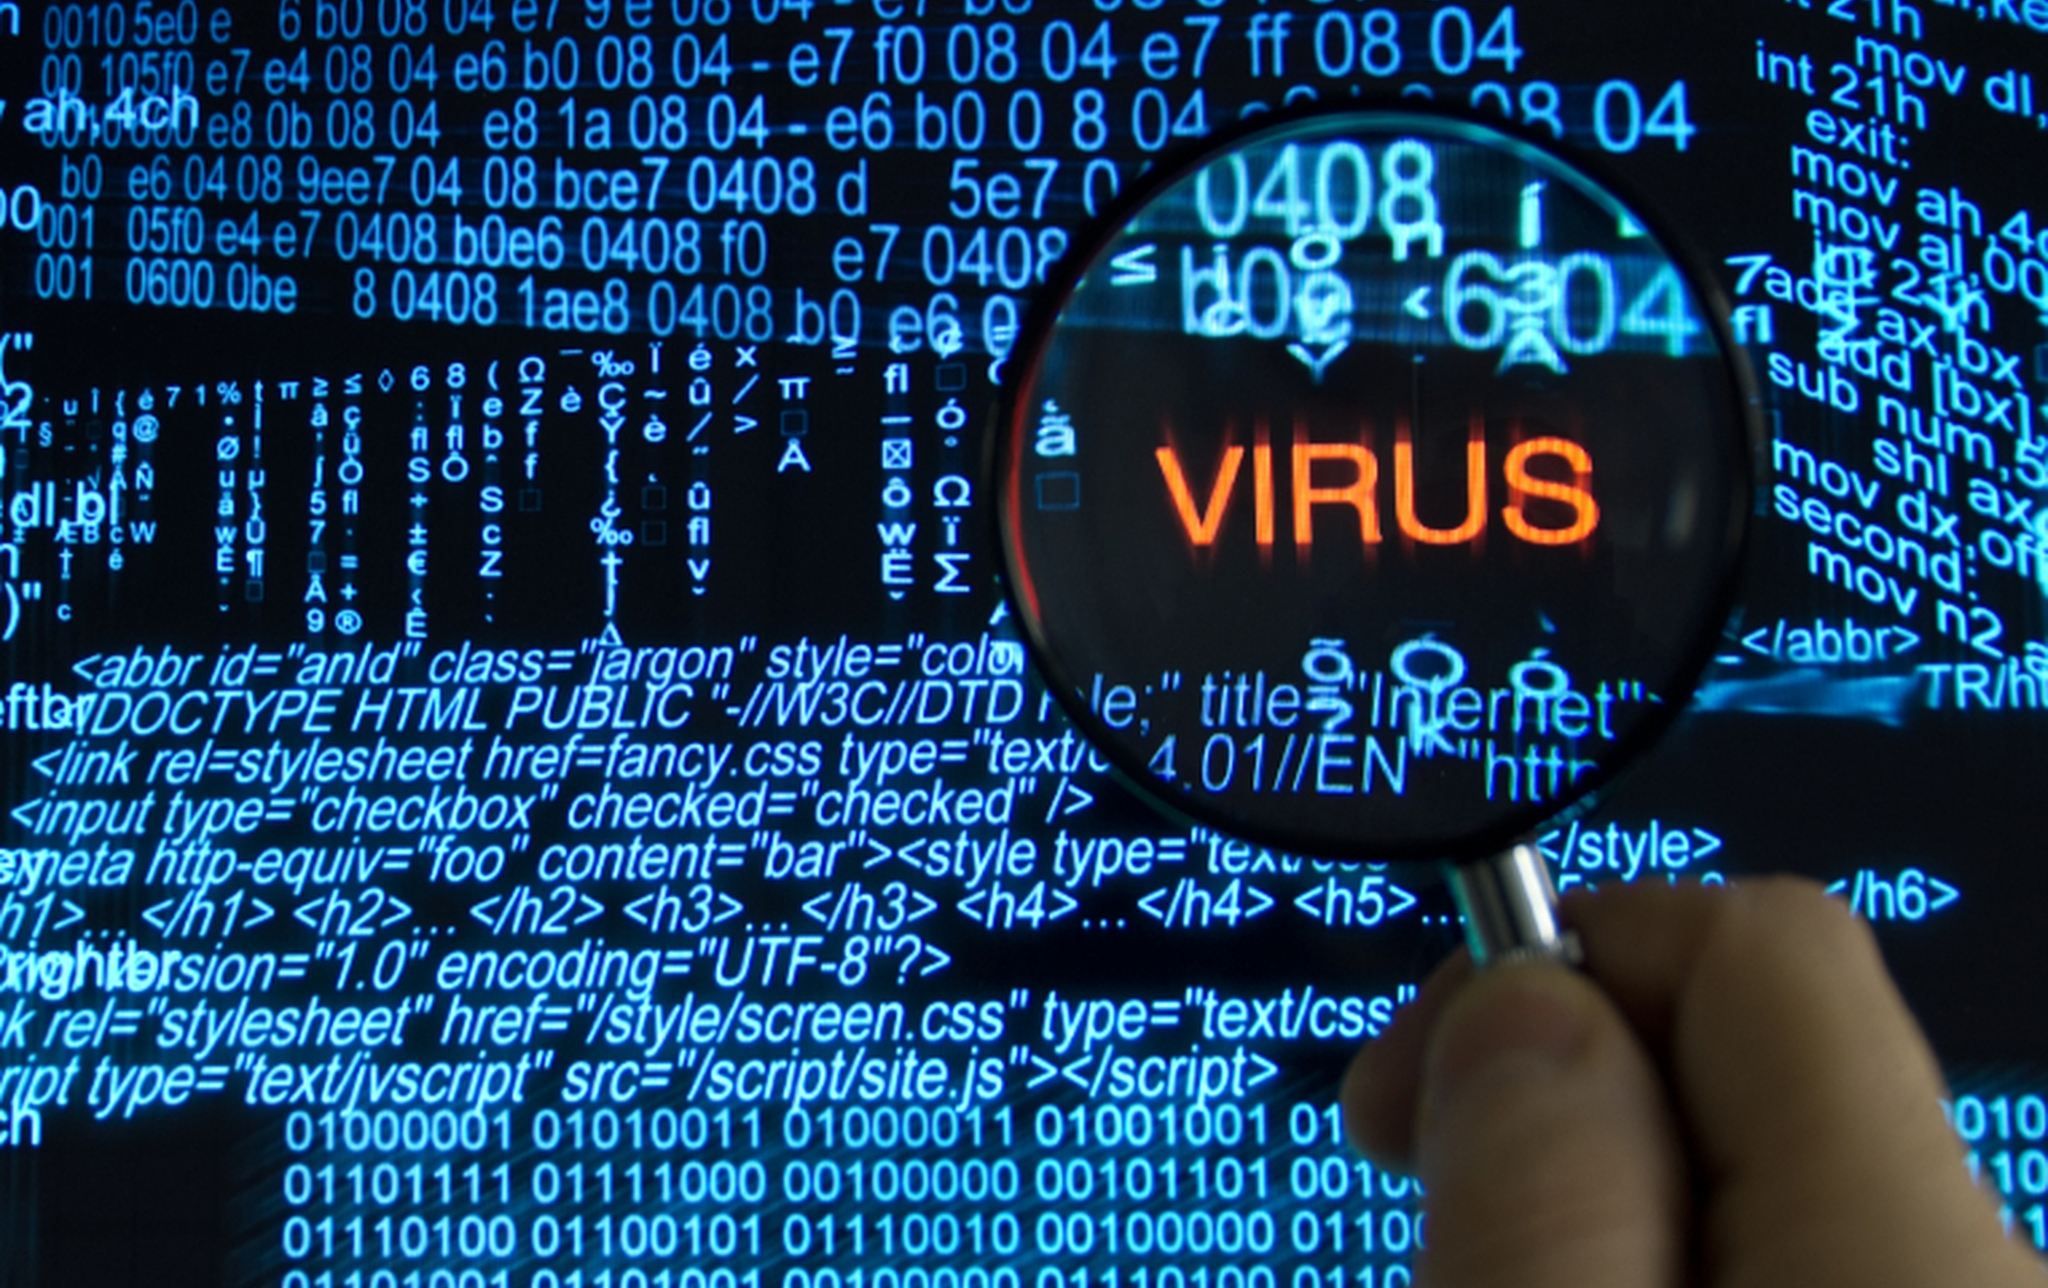 Бездротова загроза: спеціалісти знайшли новий вірус, який може зламати будь-який телефон 